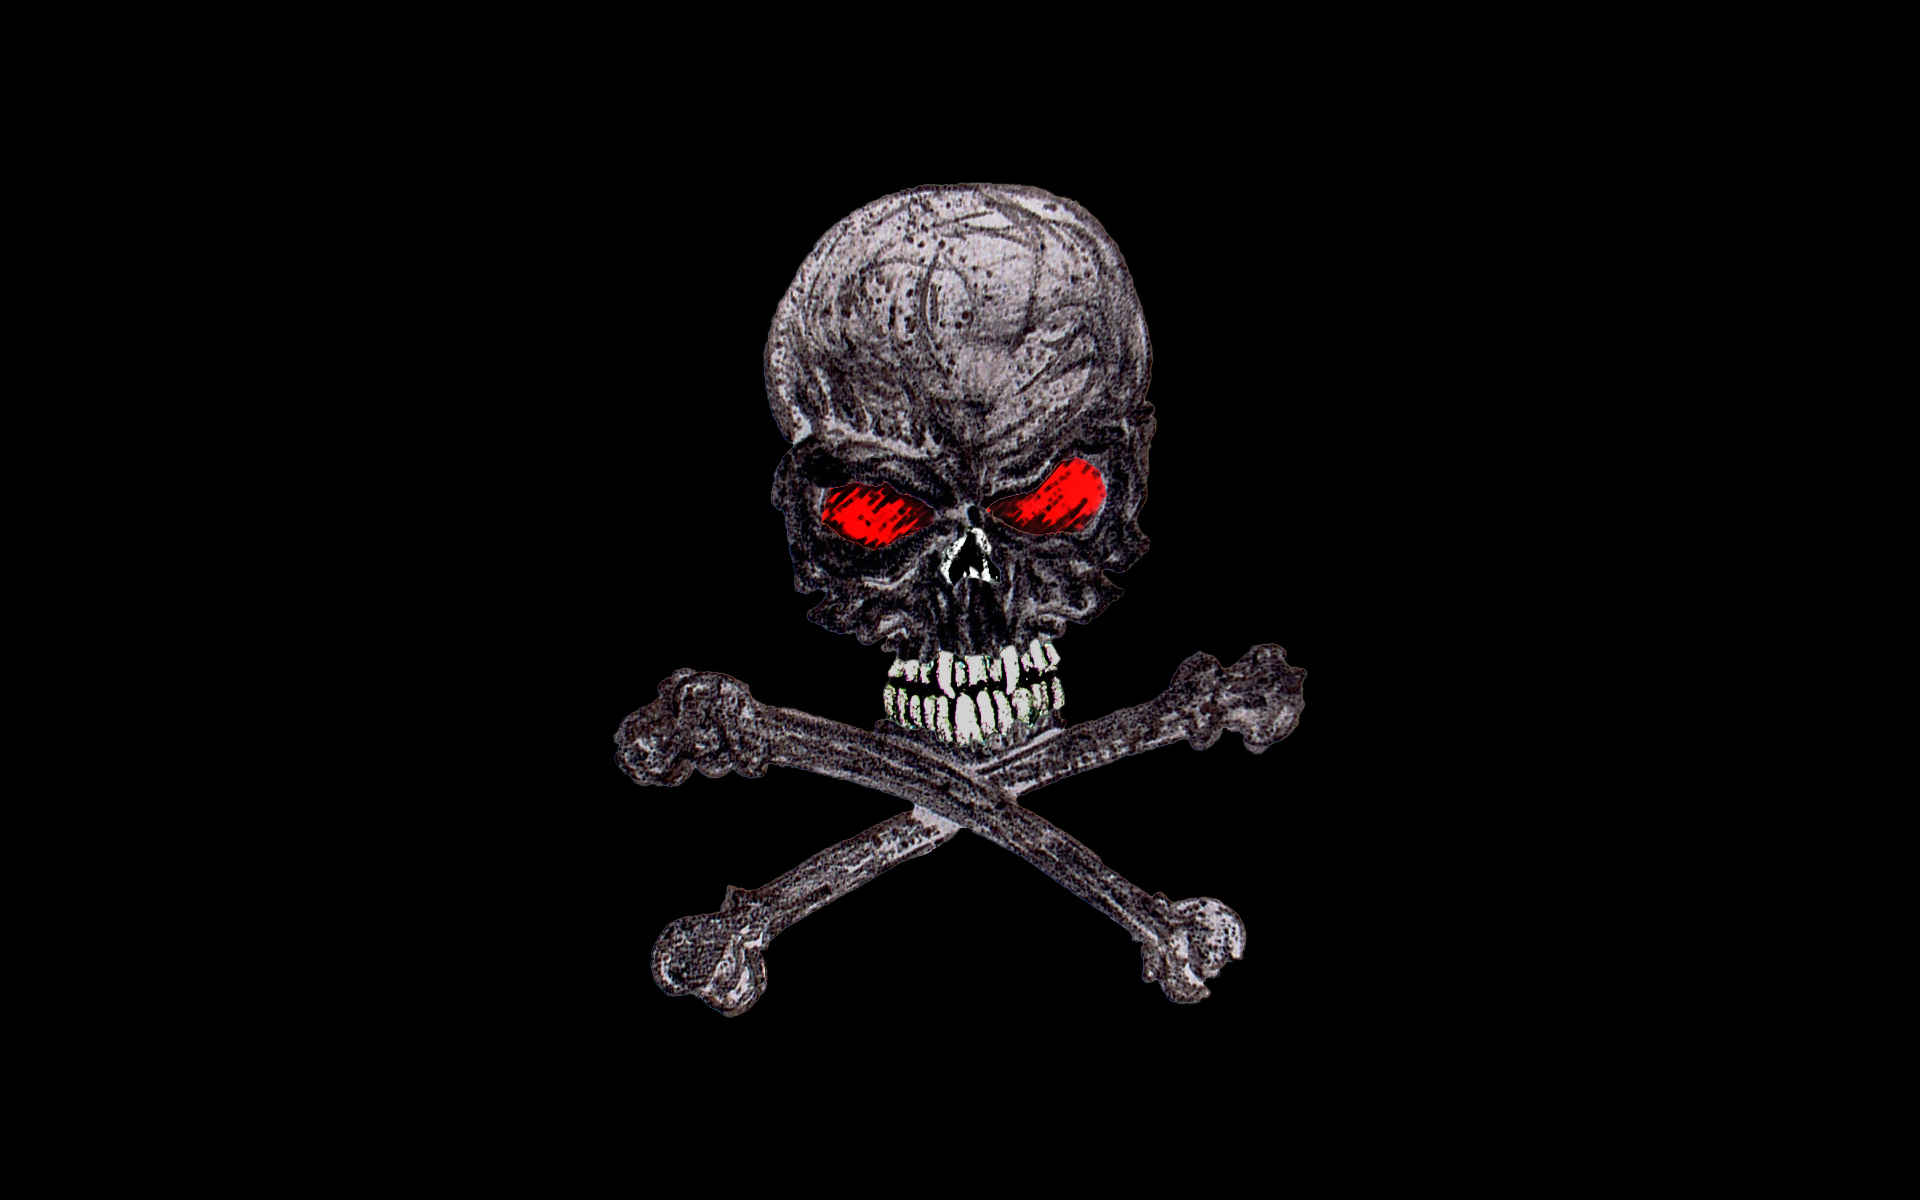 the Sketchy Dark Skull Wallpaper Sketchy Dark Skull iPhone Wallpaper